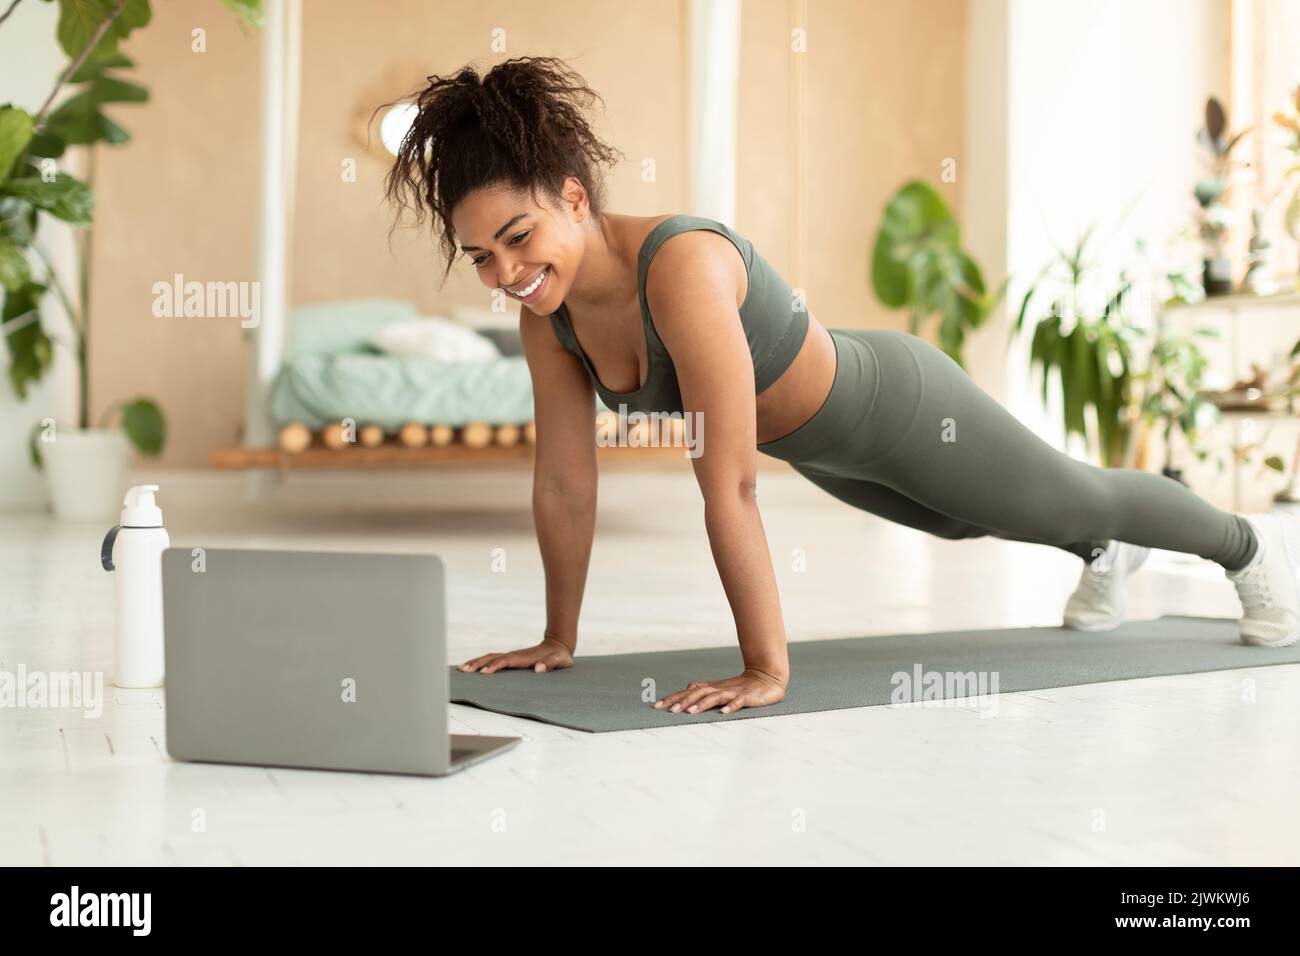 Femme afro-américaine sportive et sportive s'exerçant à la maison, femme noire sportive appréciant un cours de yoga en ligne, à l'aide d'un ordinateur portable Banque D'Images